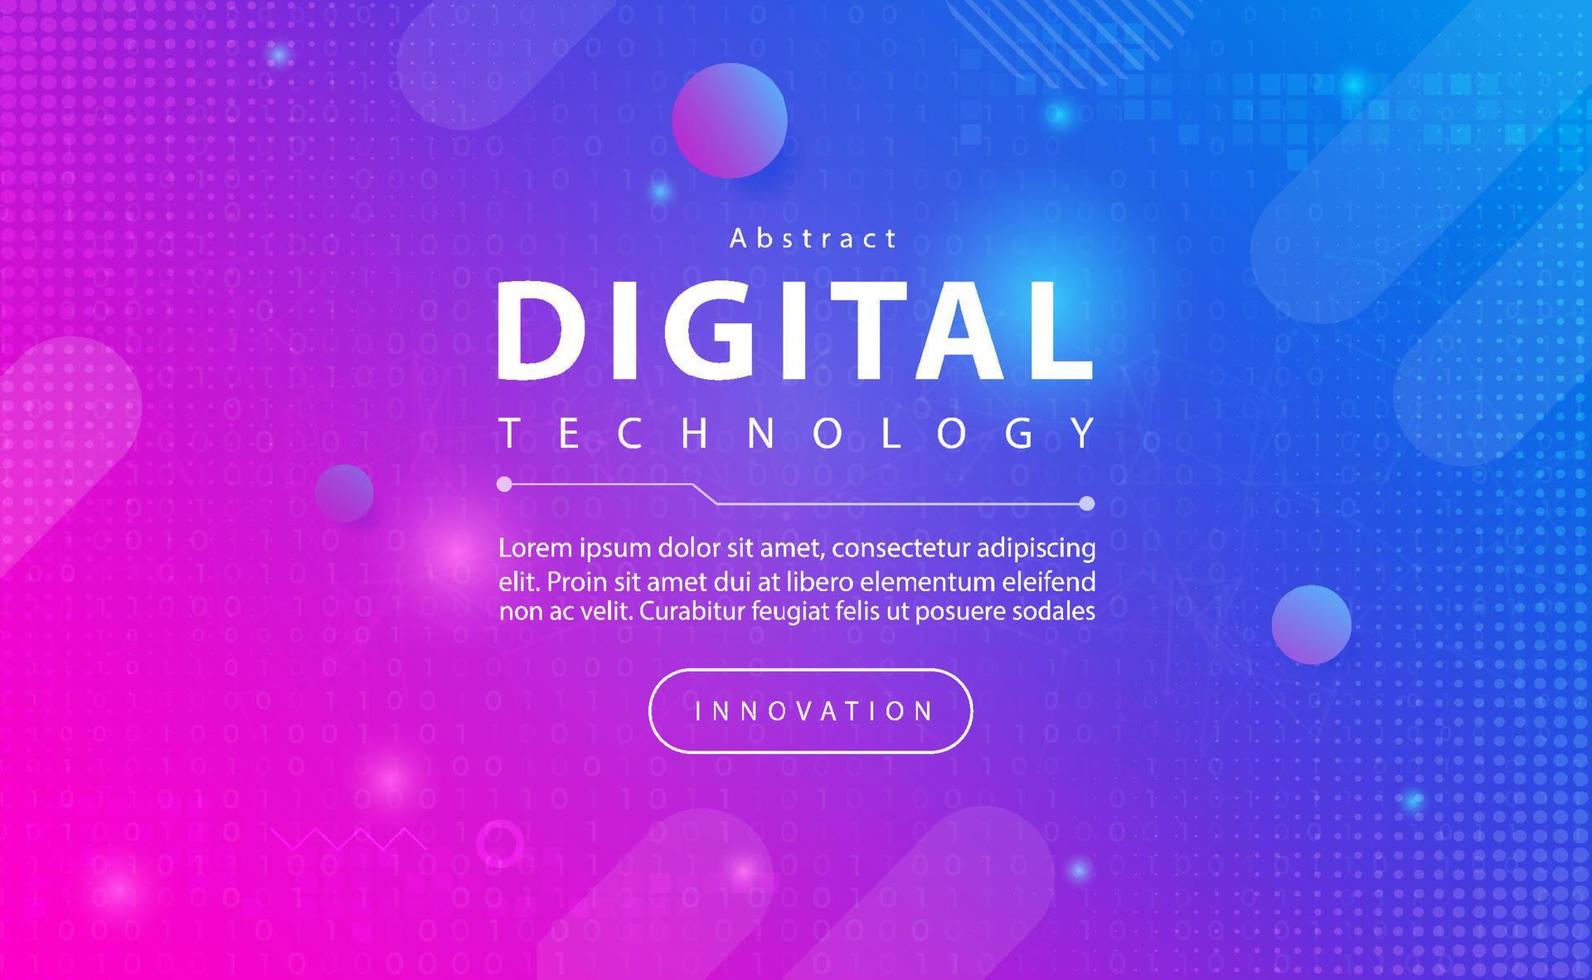 bannière de technologie numérique concept de fond bleu rose avec effets de lumière de ligne technologique, technologie abstraite, vecteur d'illustration pour la conception graphique